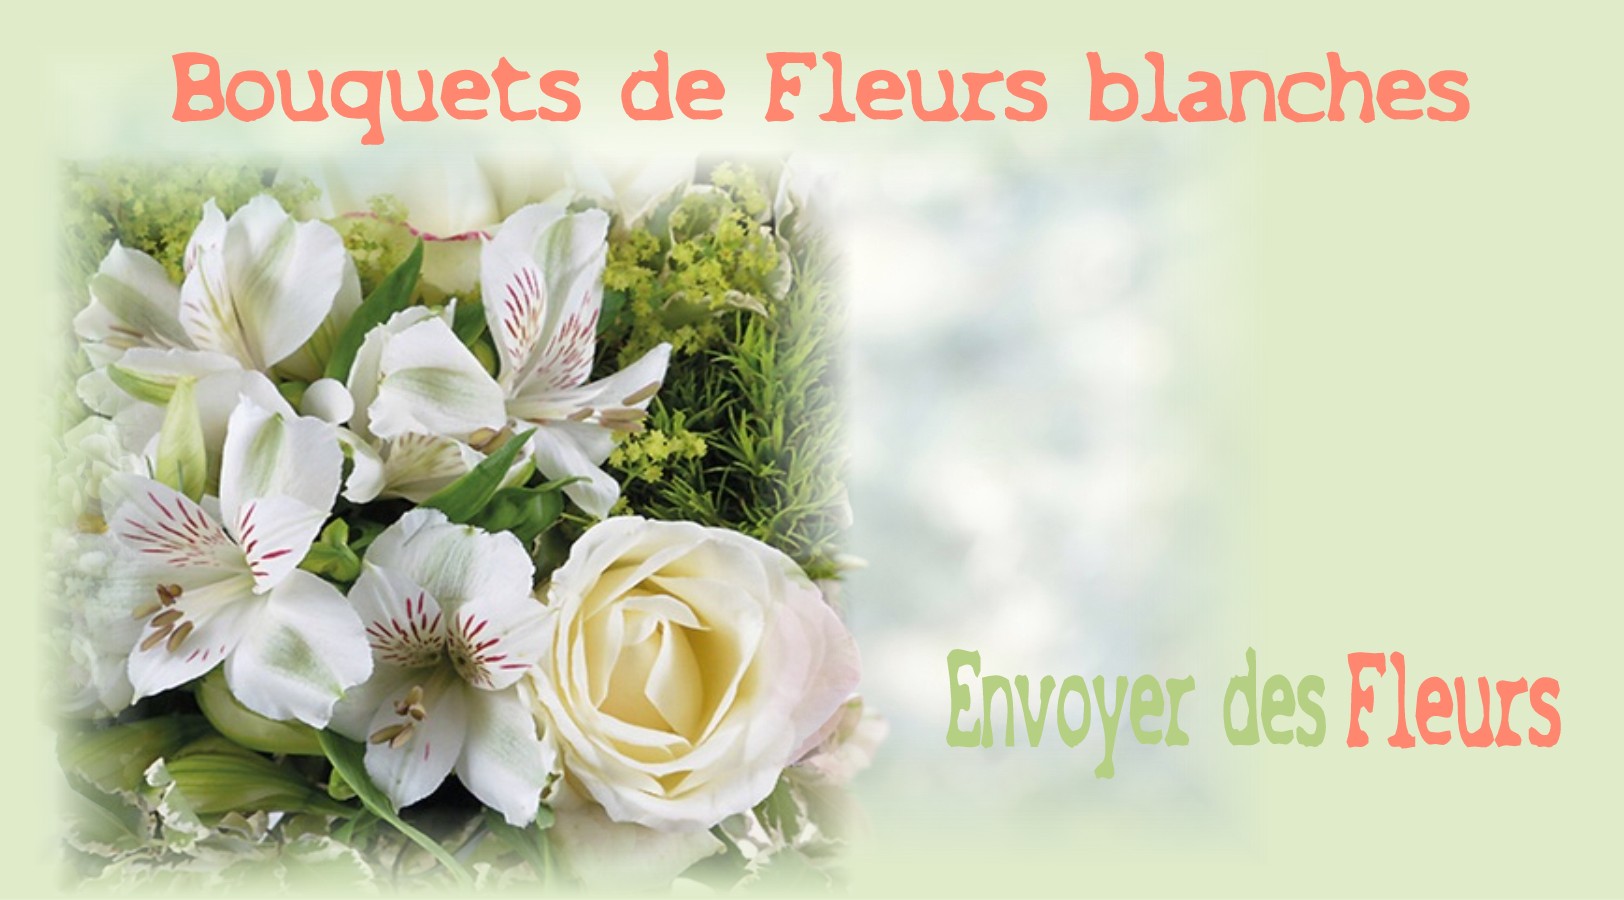 BOUQUETS DE FLEURS BLANCHES -FLEURISTE MARSEILLE (13) - ENVOYER DES FLEURS